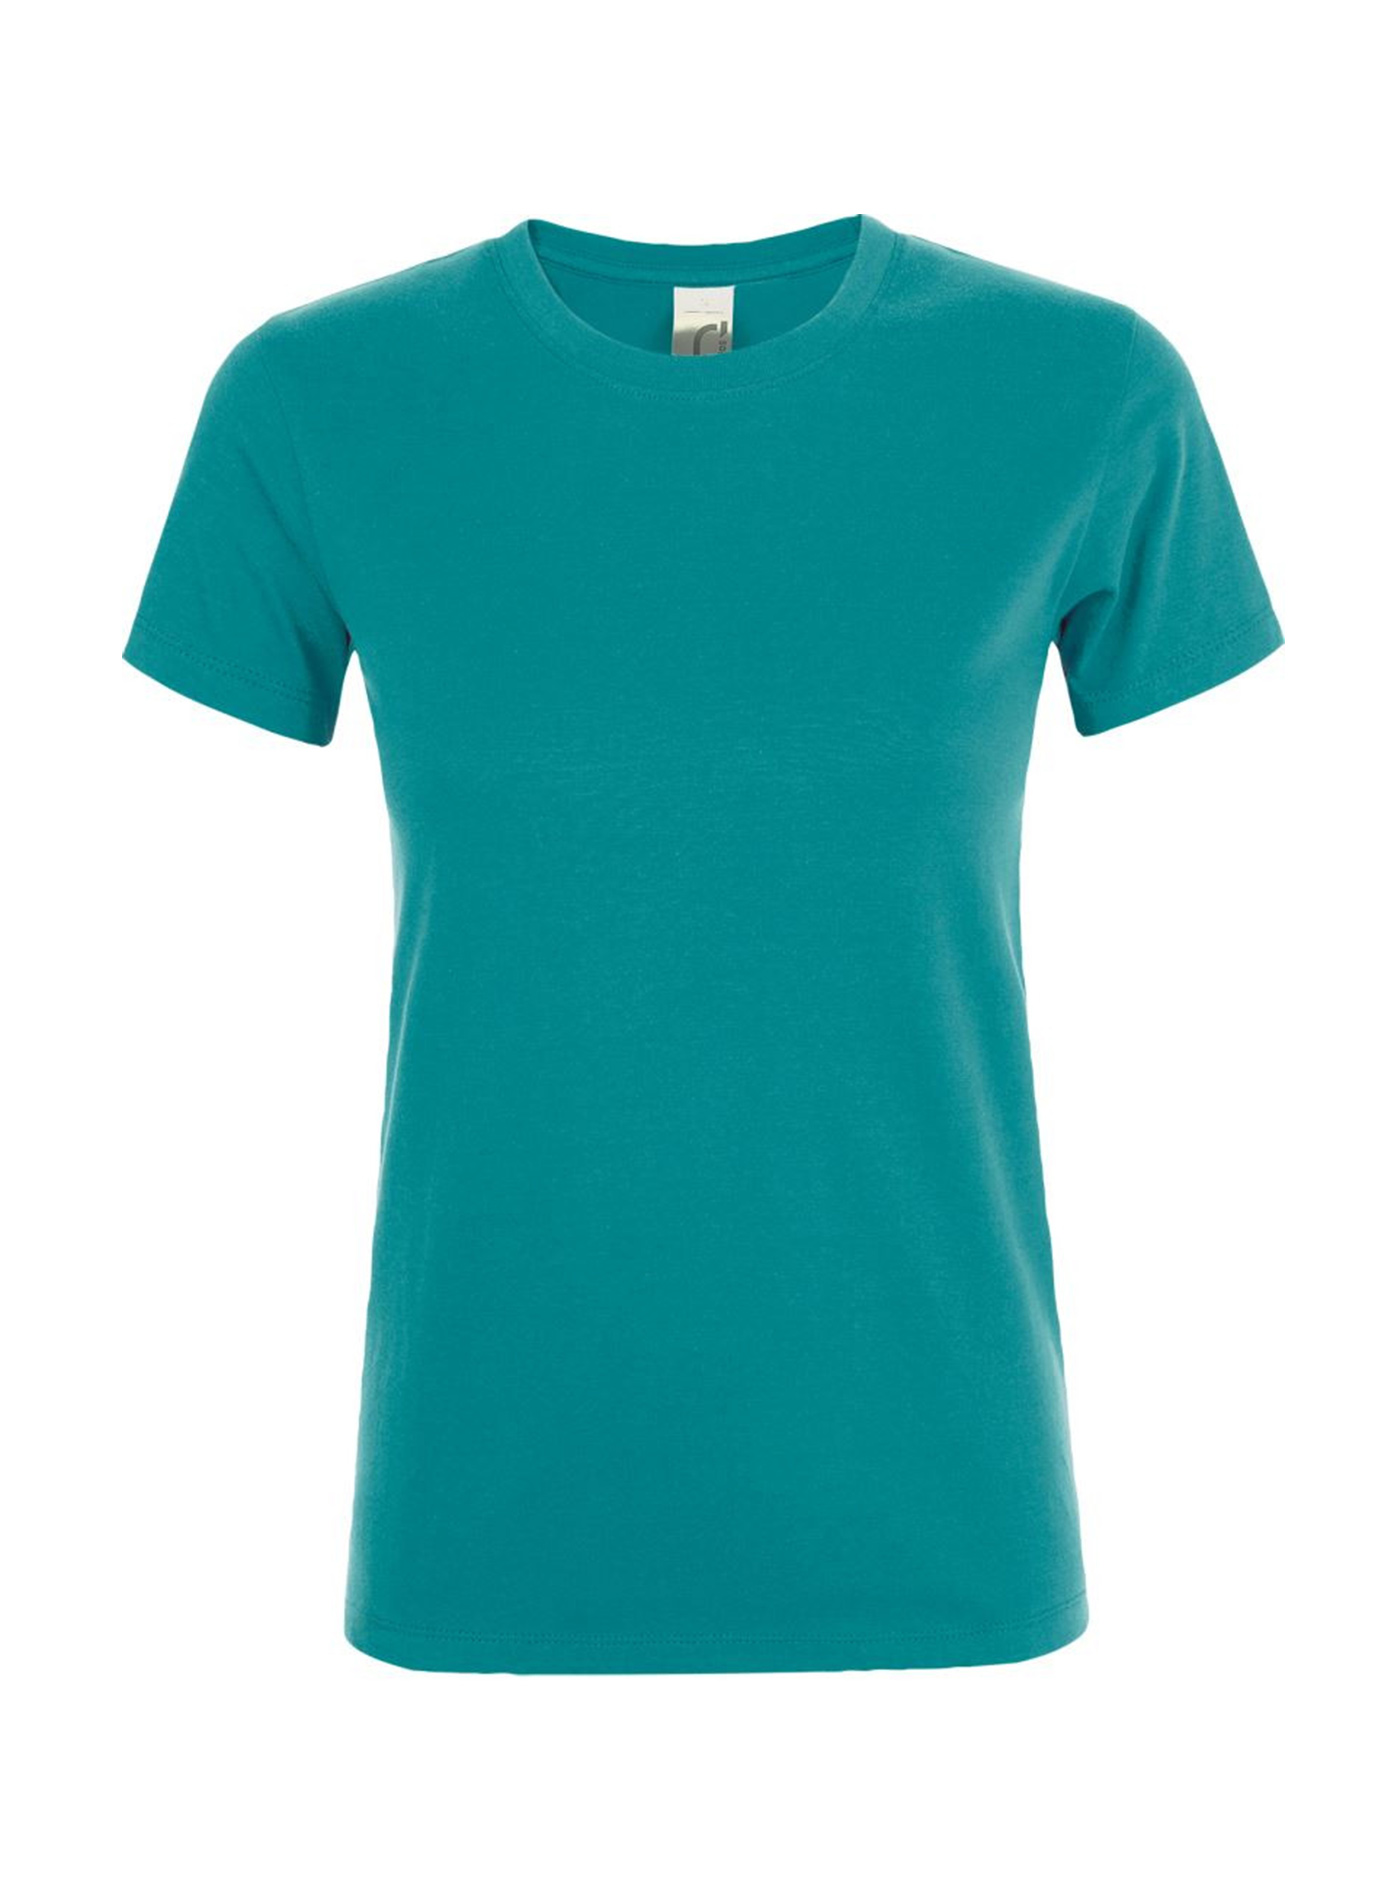 Dámské tričko SOL'S Regent - Tyrkysově modrá M